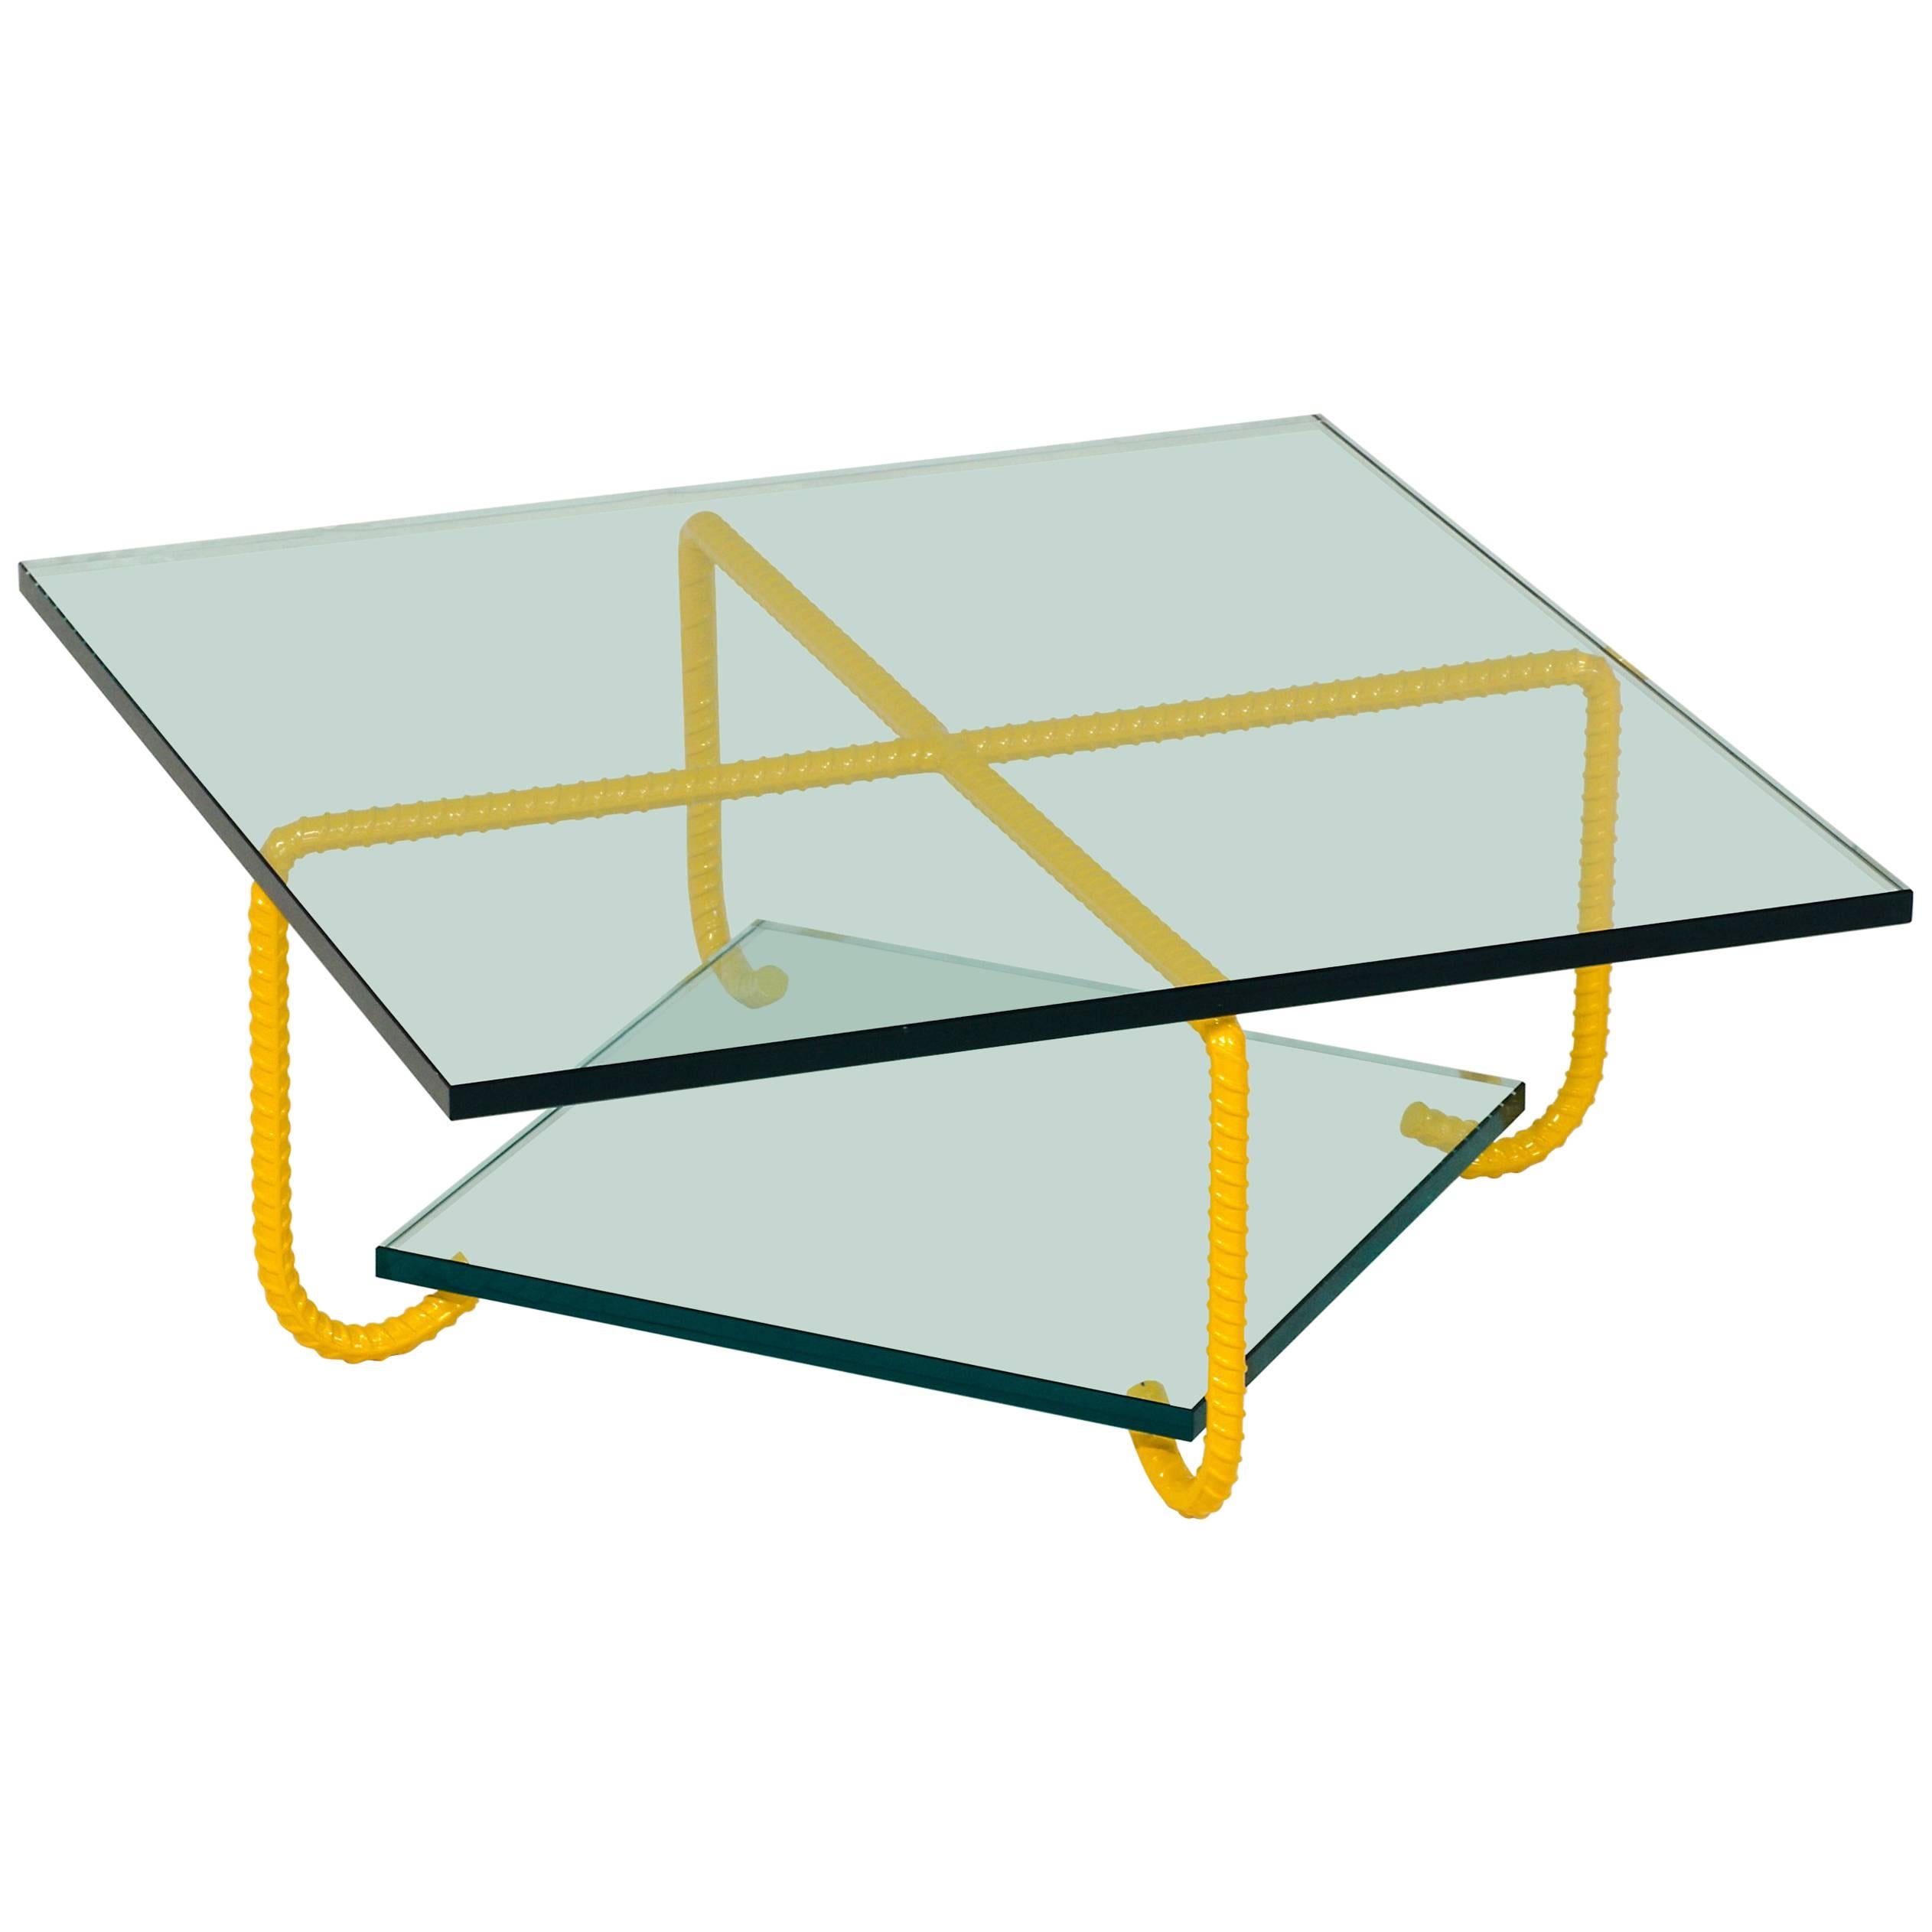 Table basse avec base en acier et plateau en verre